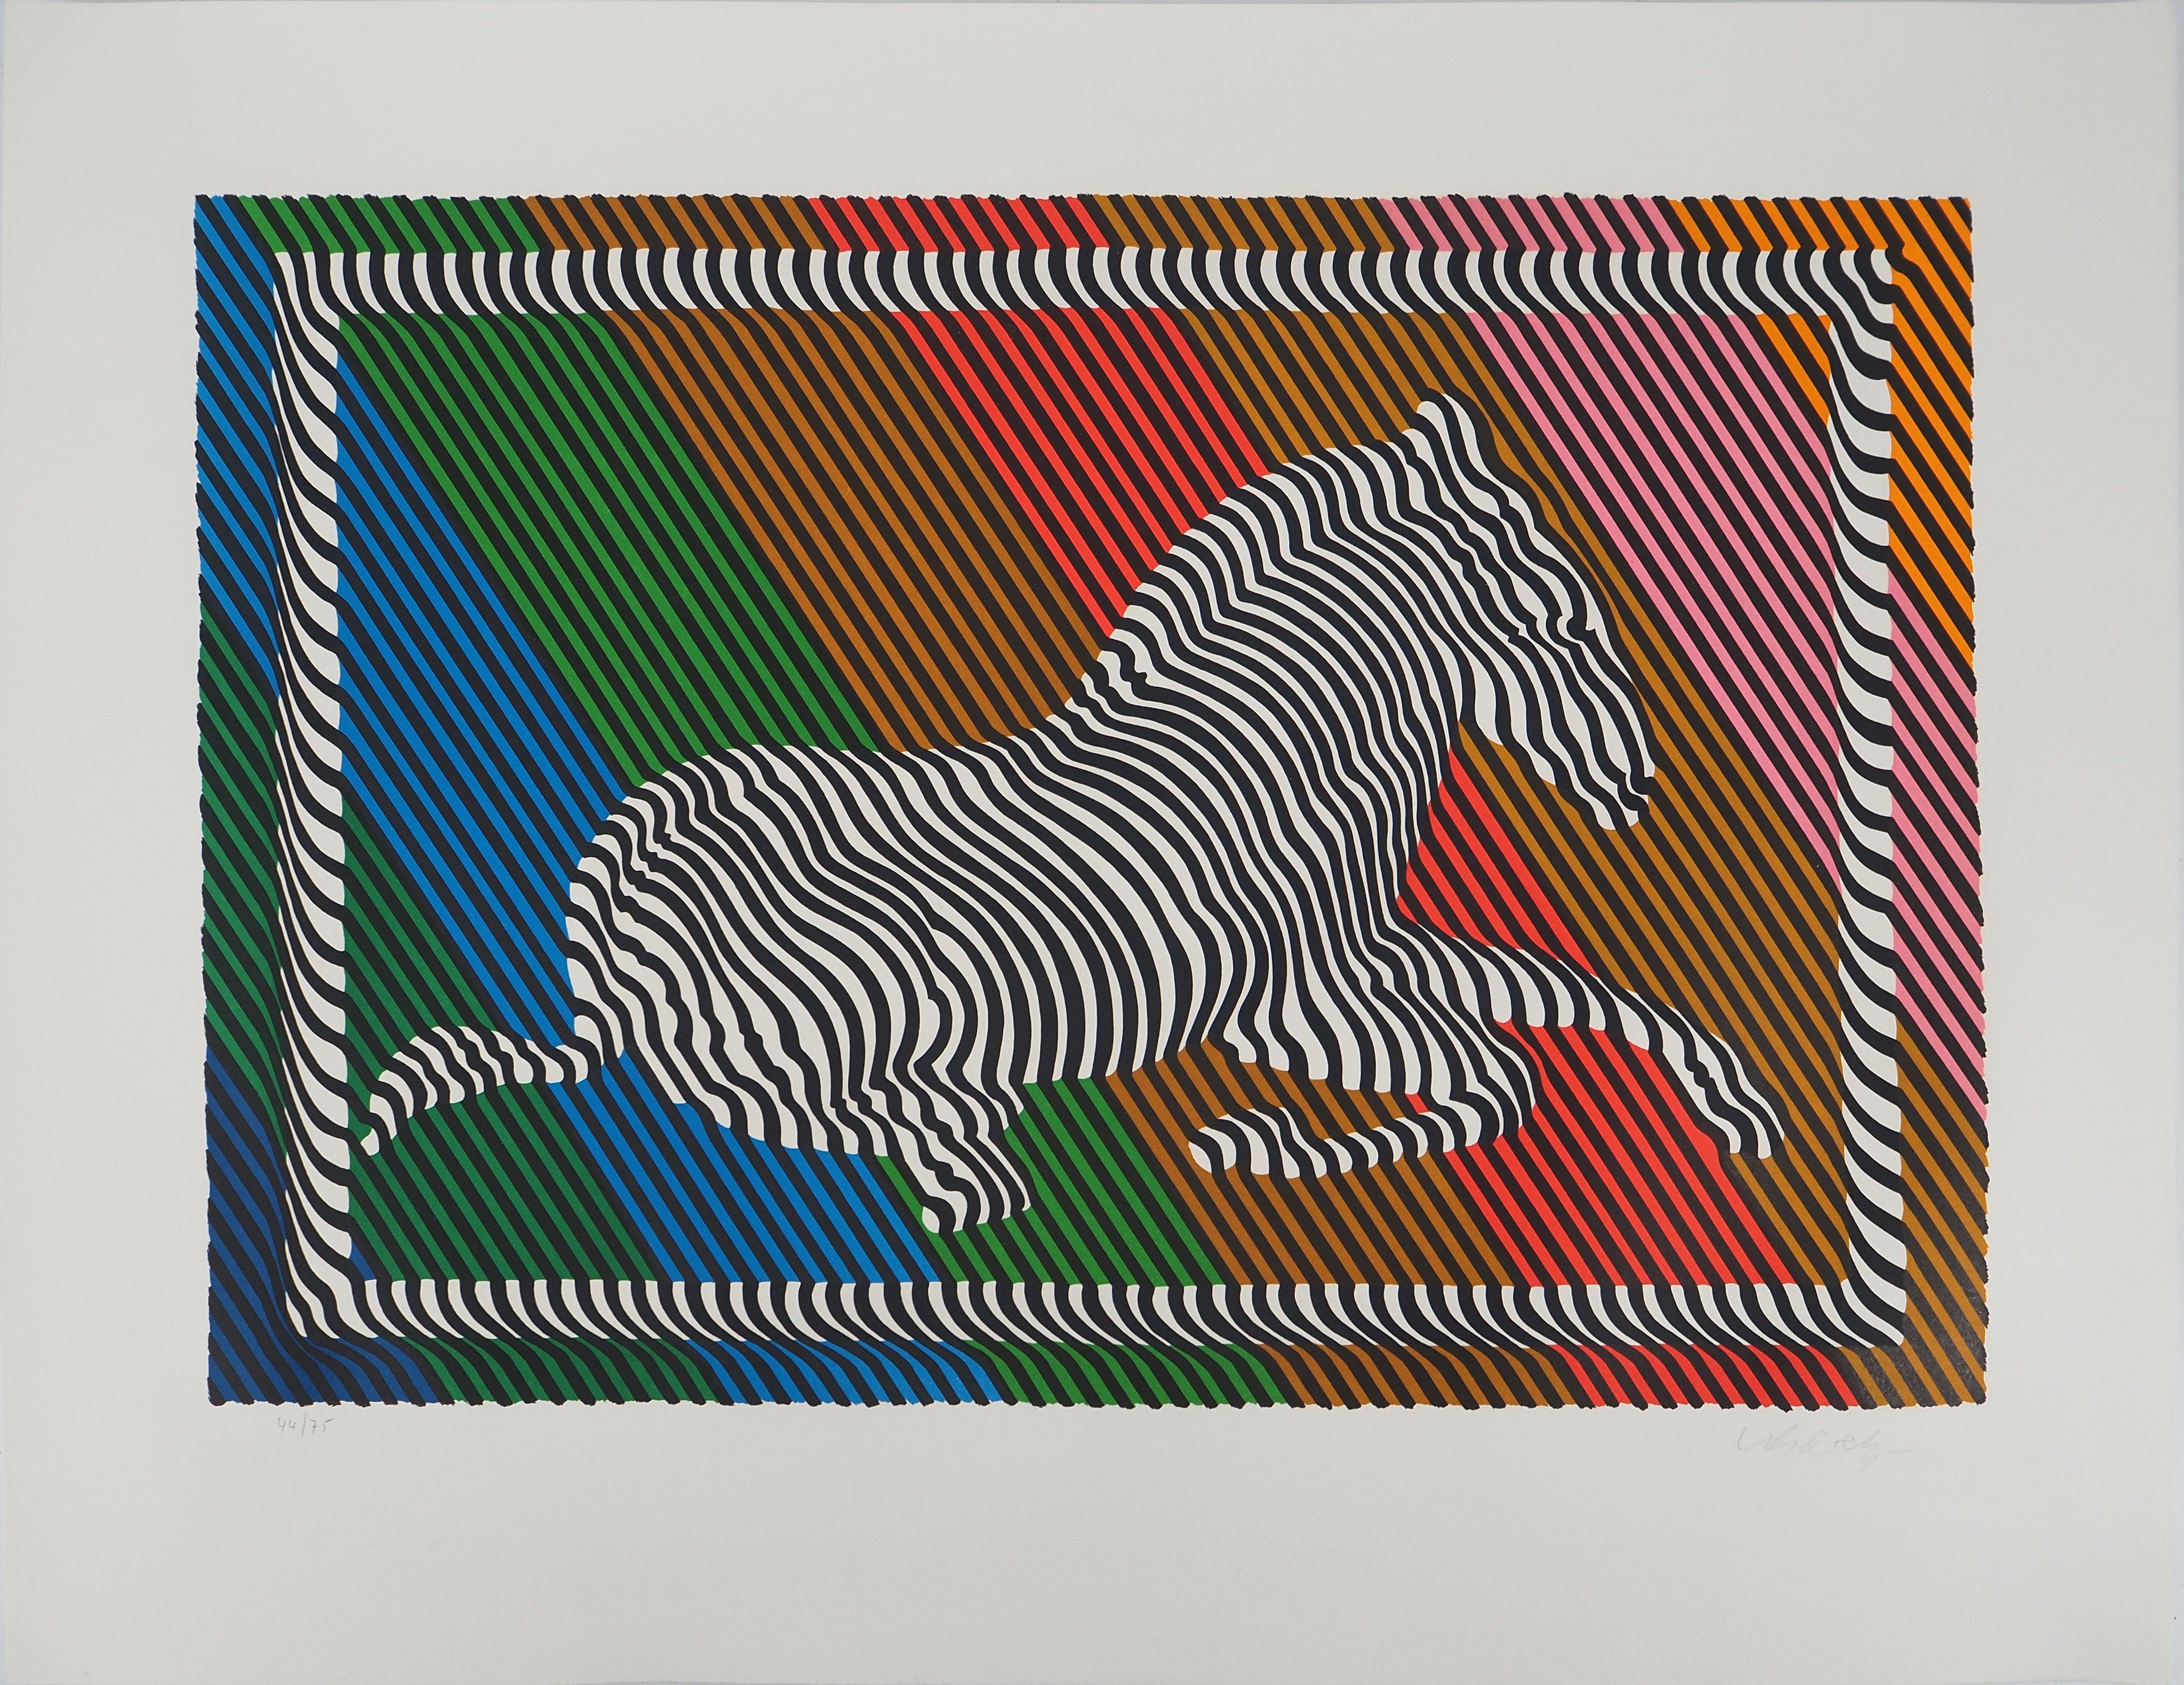 Zebra on a Rainbow (Op Art) - Original Lithograph, HANDSIGNED